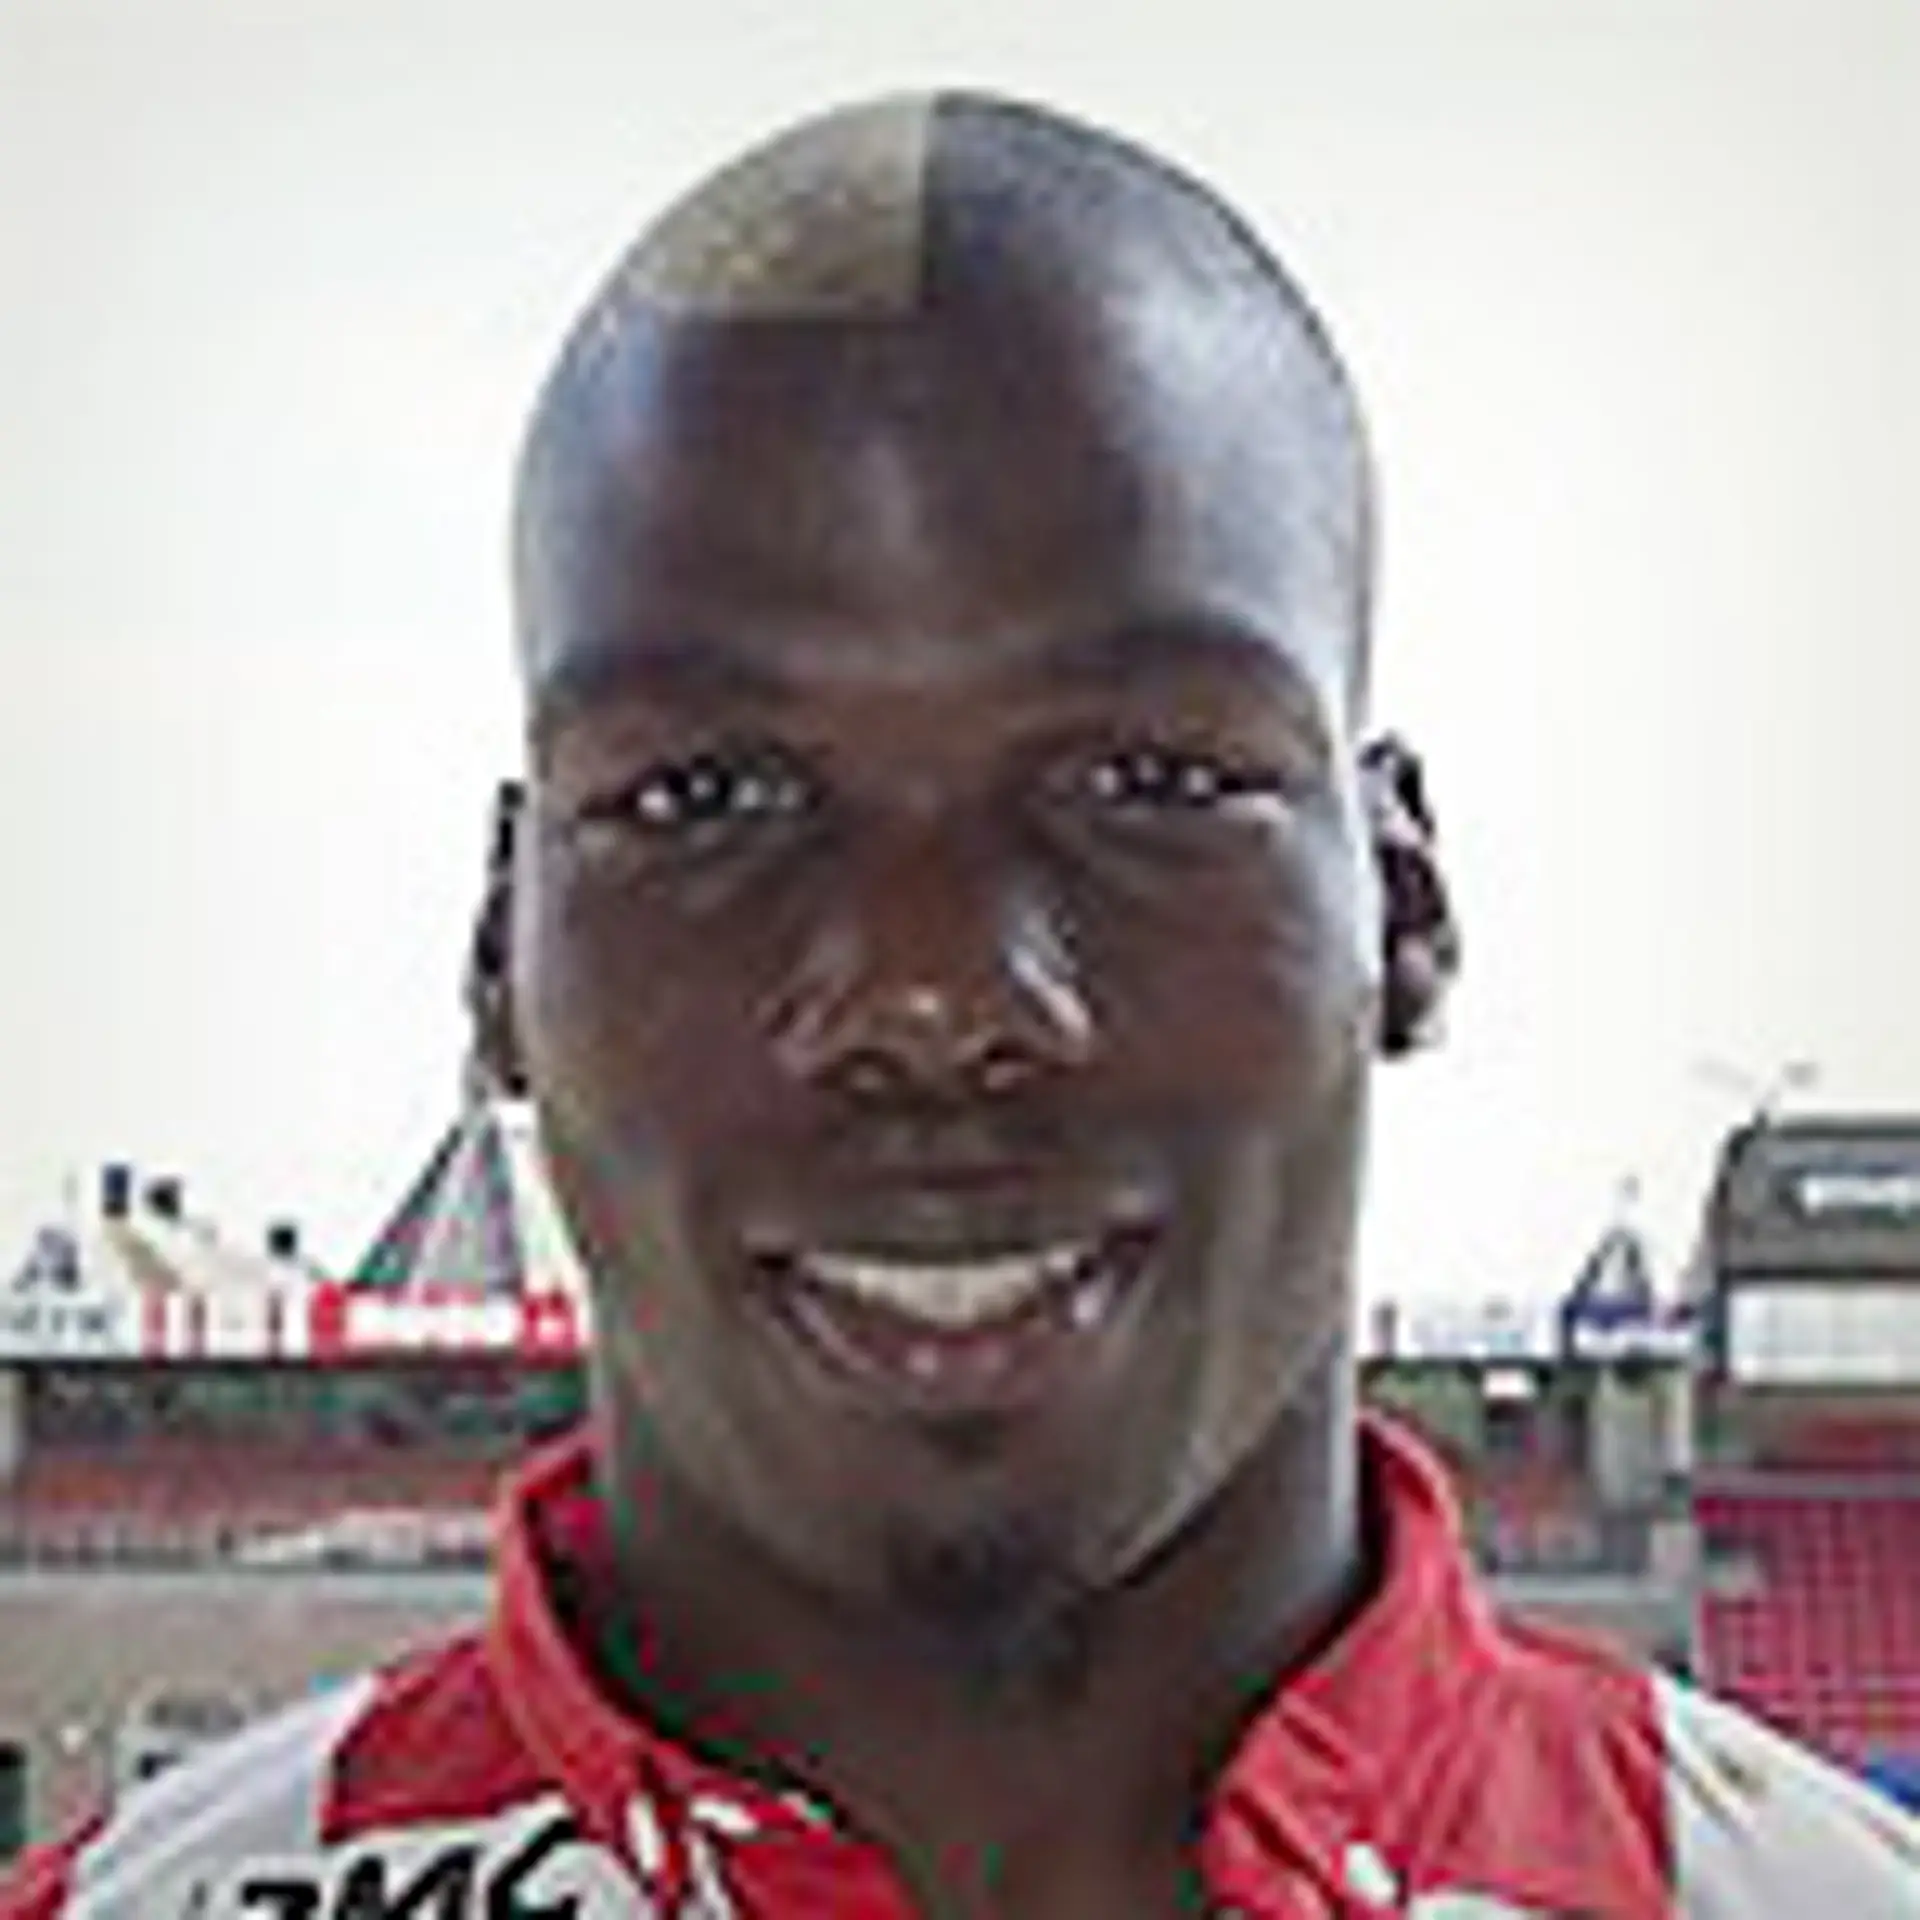 Mathias Pogba